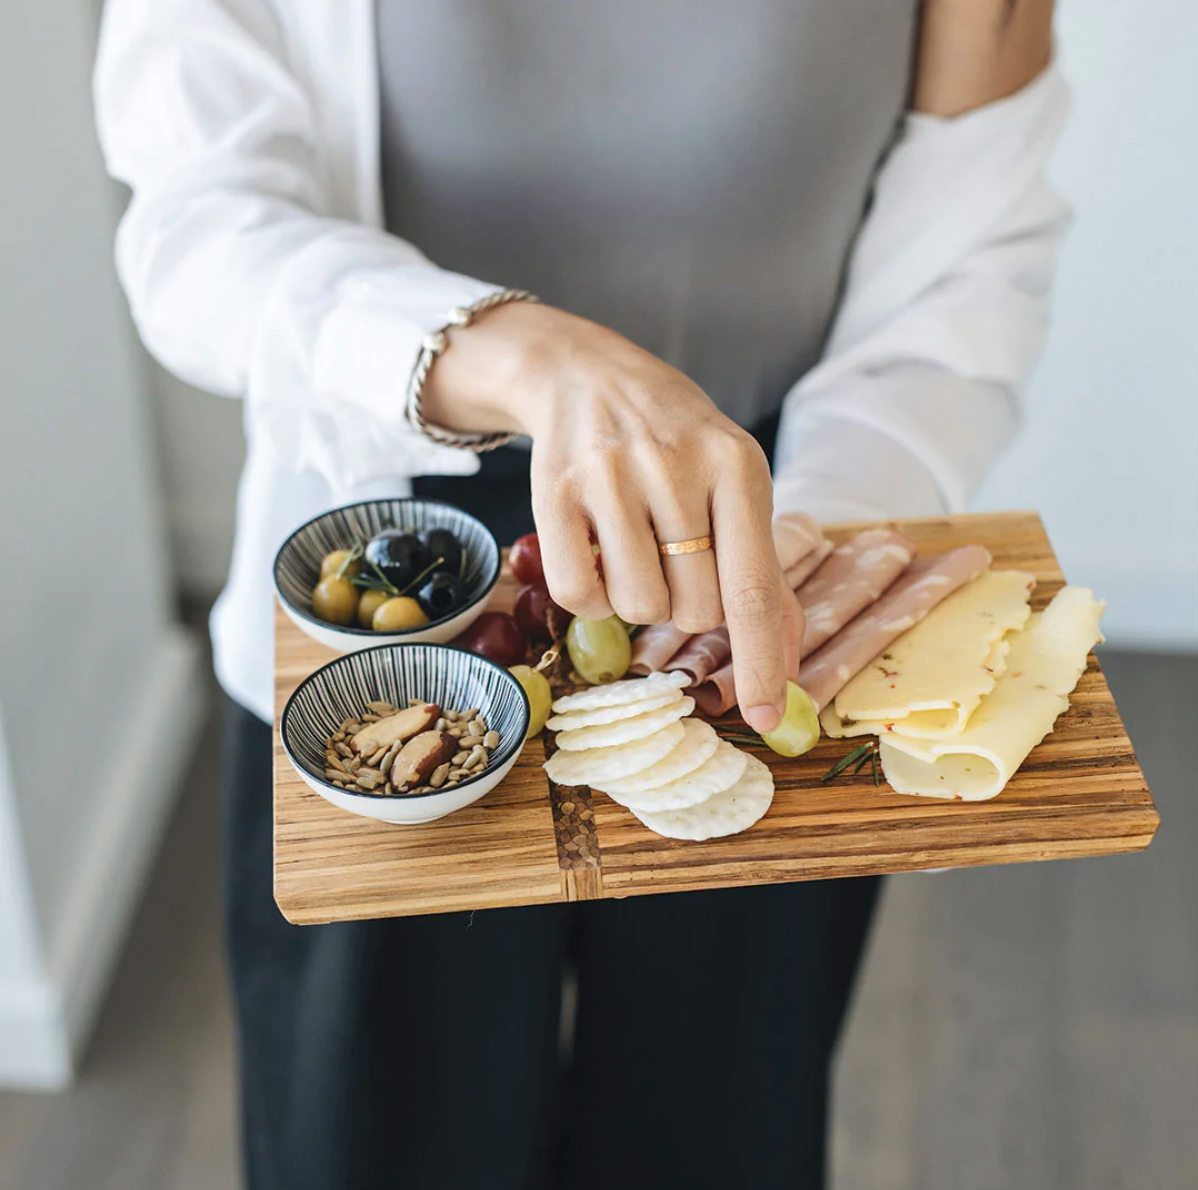 Chop board - charcuterie & cheese